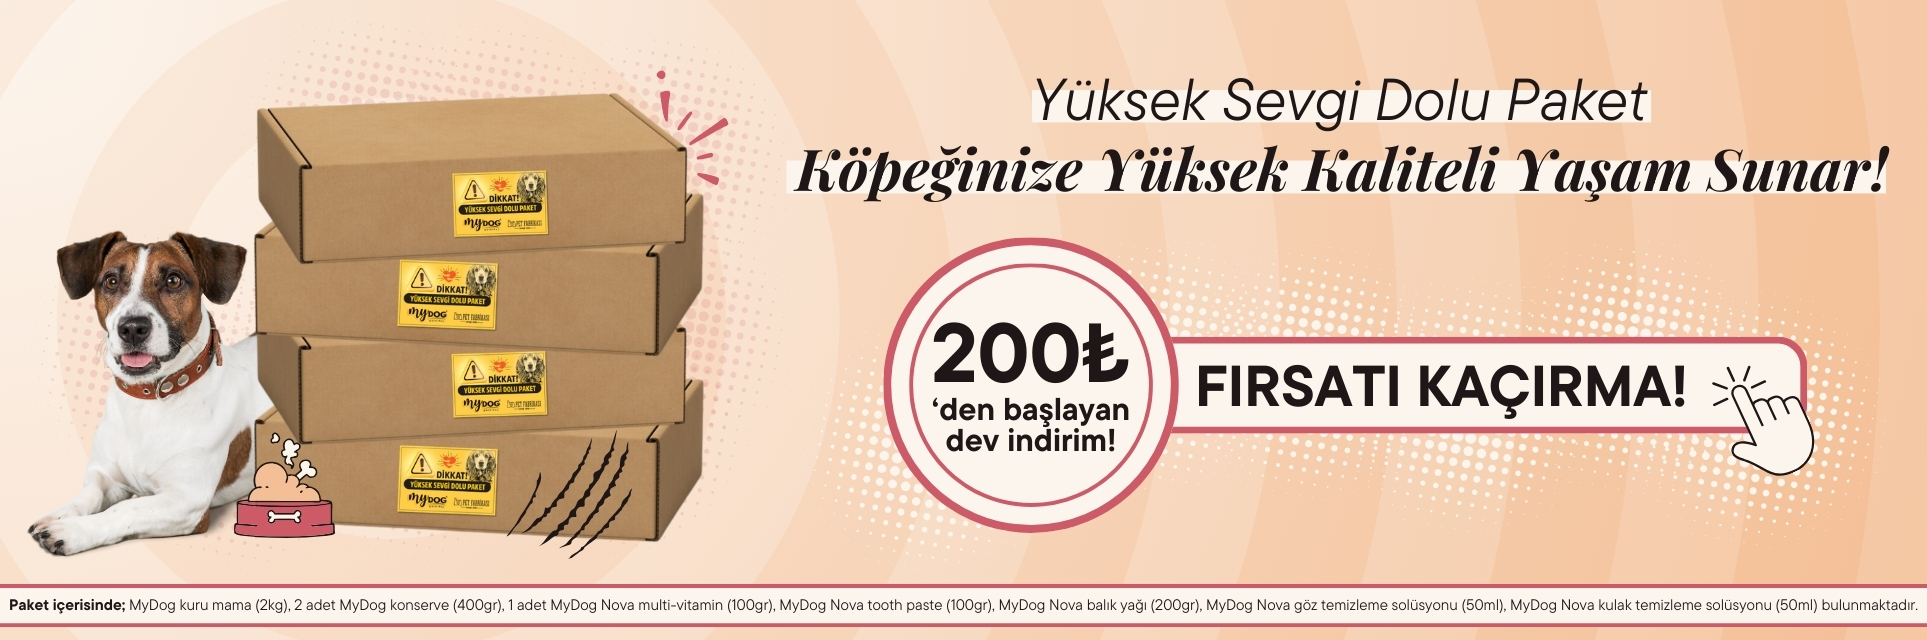 Yüksek Sevgi Dolu Paket Website Banner (Web/Köpek)